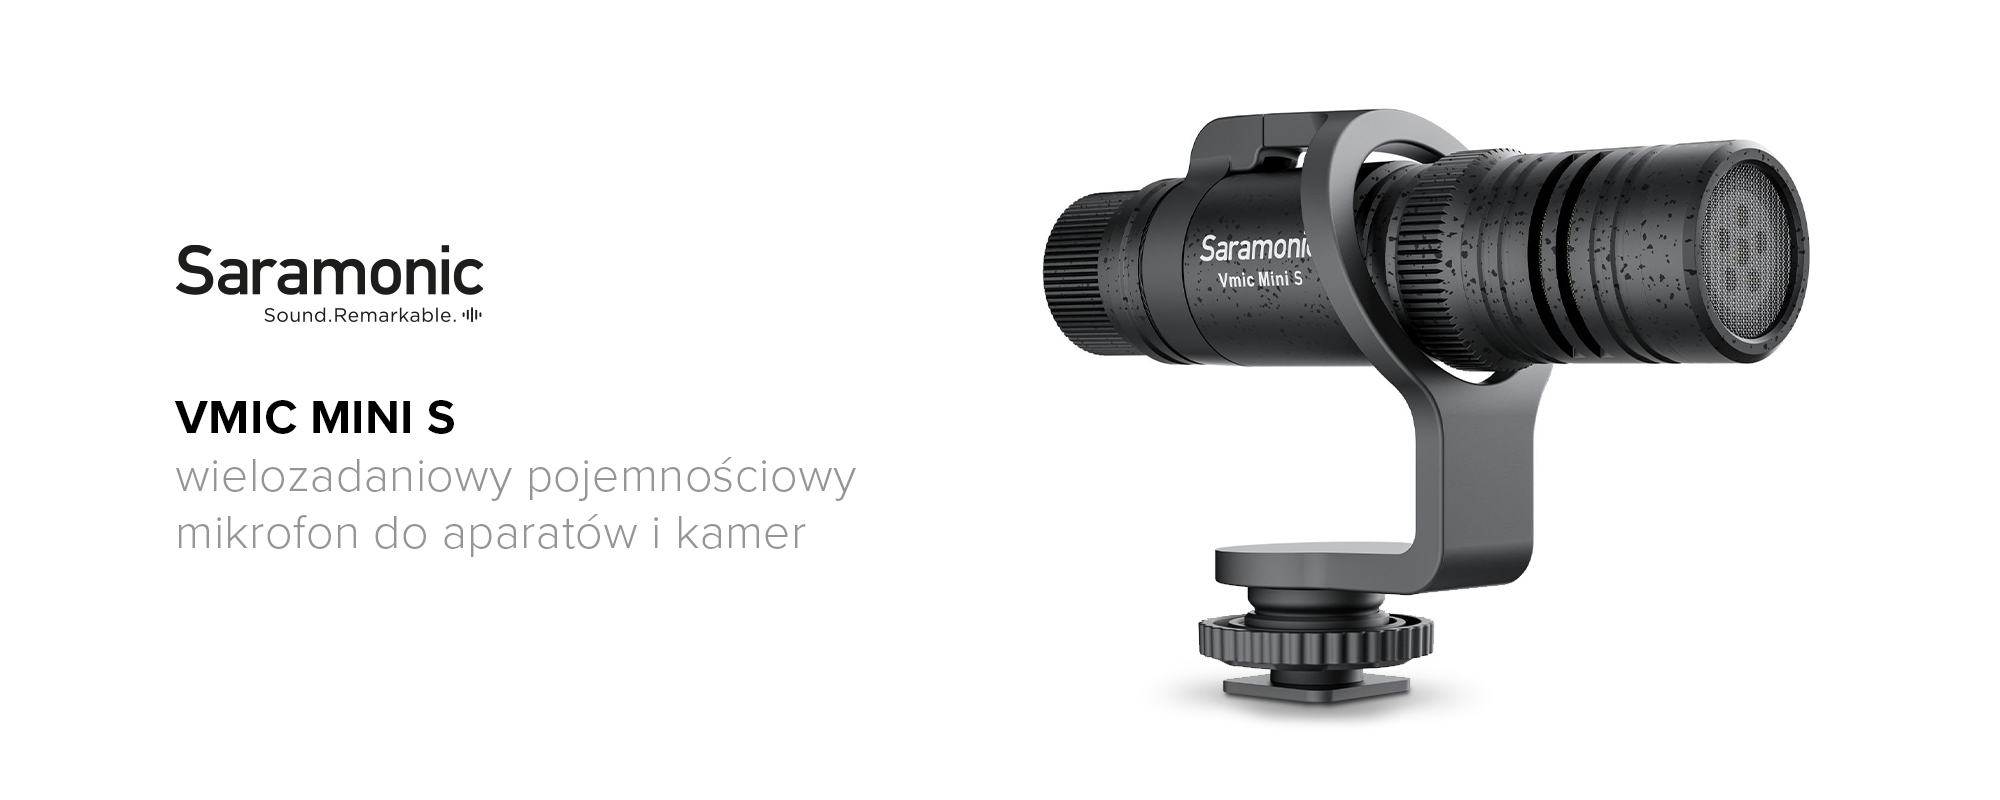 Mikrofon pojemnościowy Saramonic Vmic Mini S do aparatów kamer